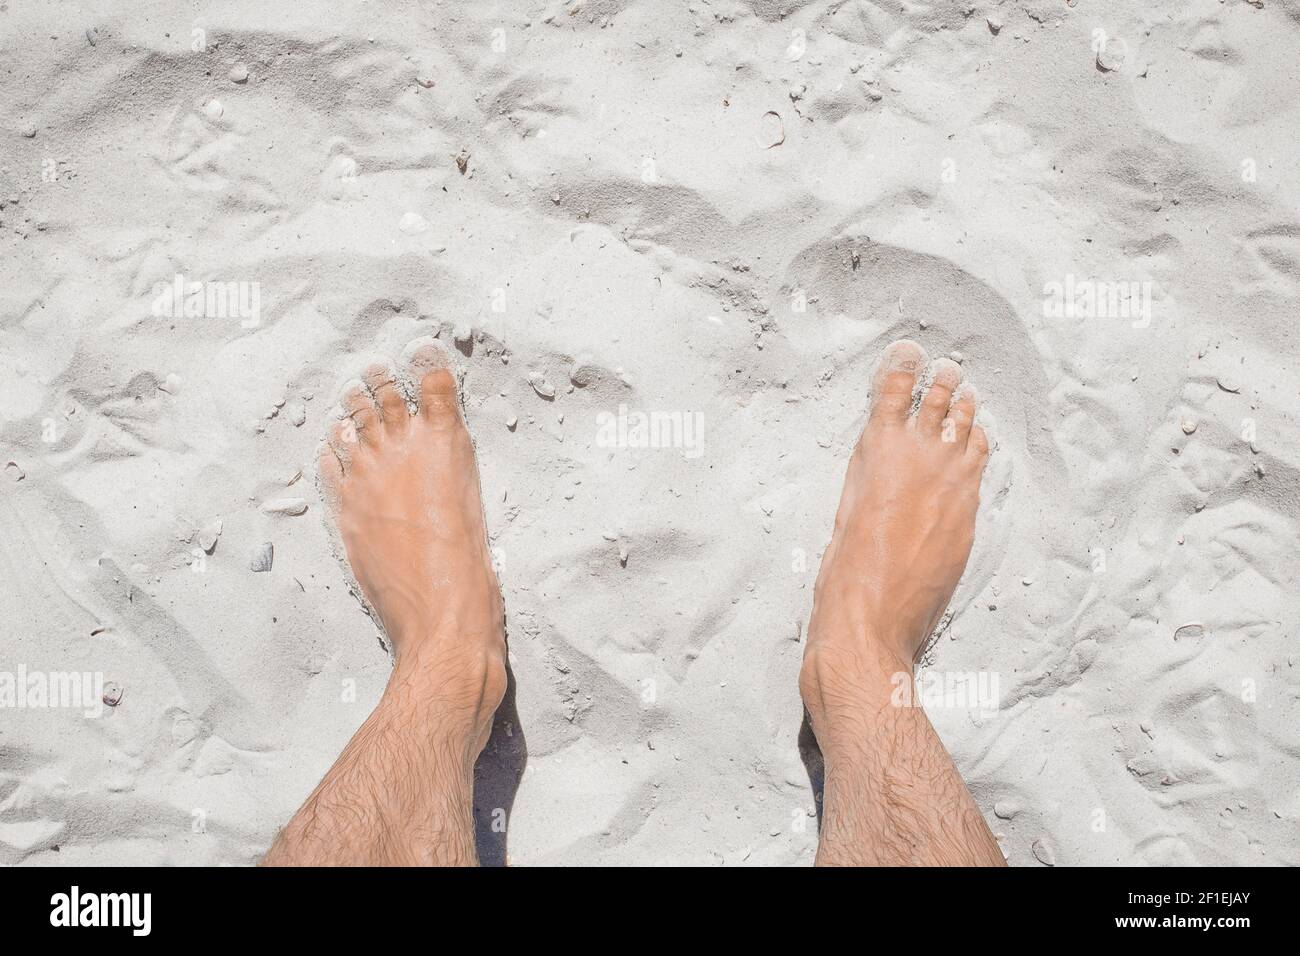 Le gambe del giovanotto si trovano distese sulla sabbia bianca della spiaggia, la vista dall'alto. Foto Stock